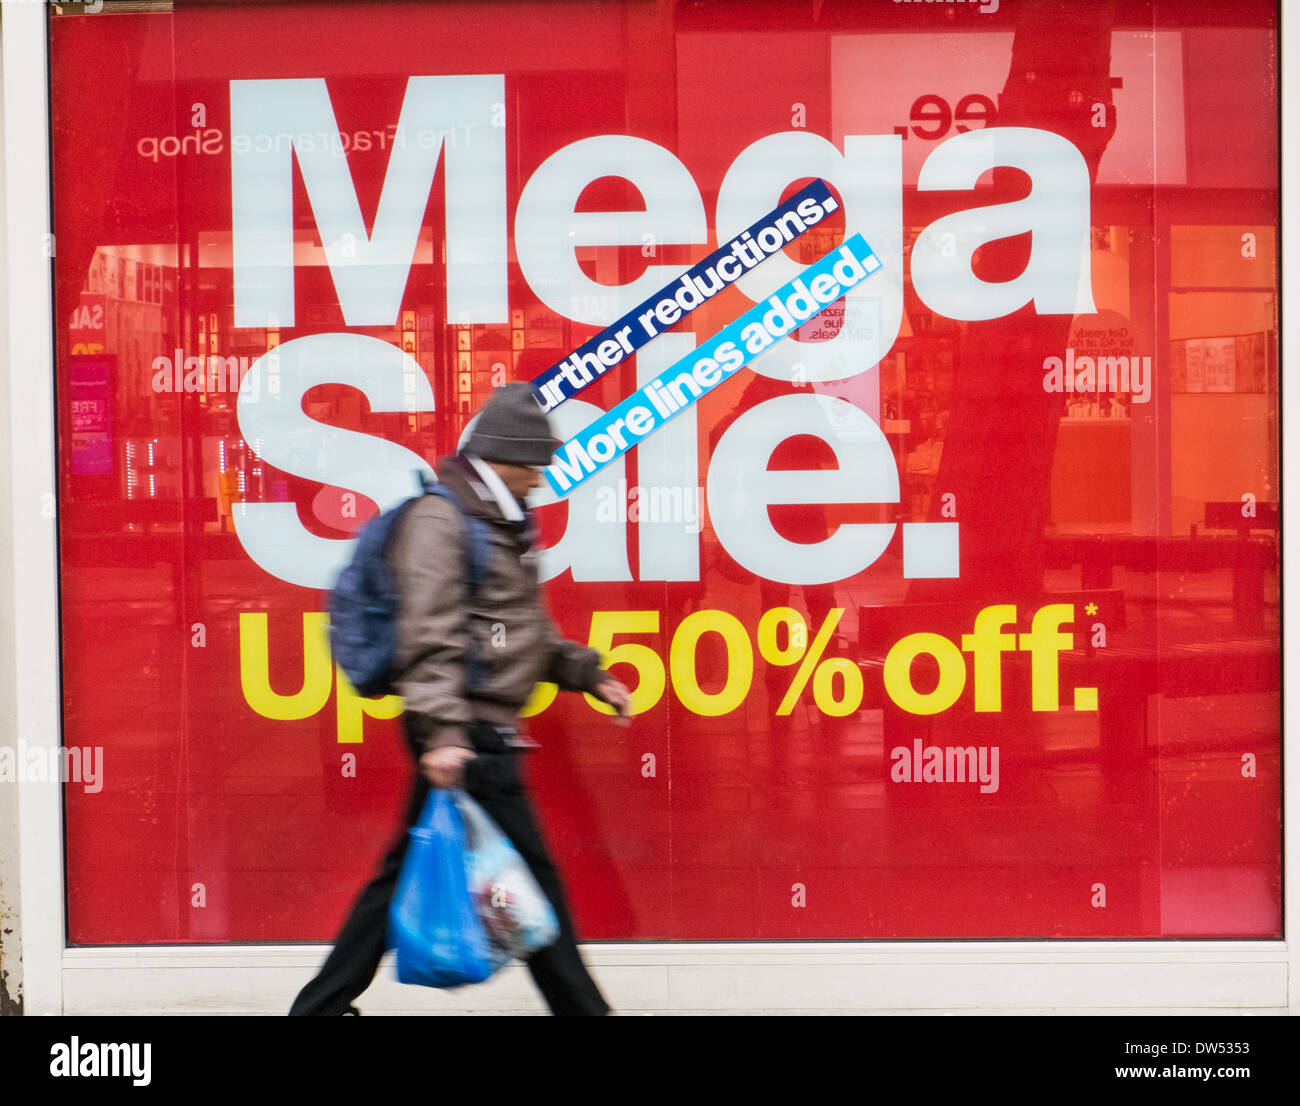 Une motion blurred shopper sacs de transport en passant devant un magasin de détail vitrine avec un grand panneau rouge vente en ligne de publicité Banque D'Images